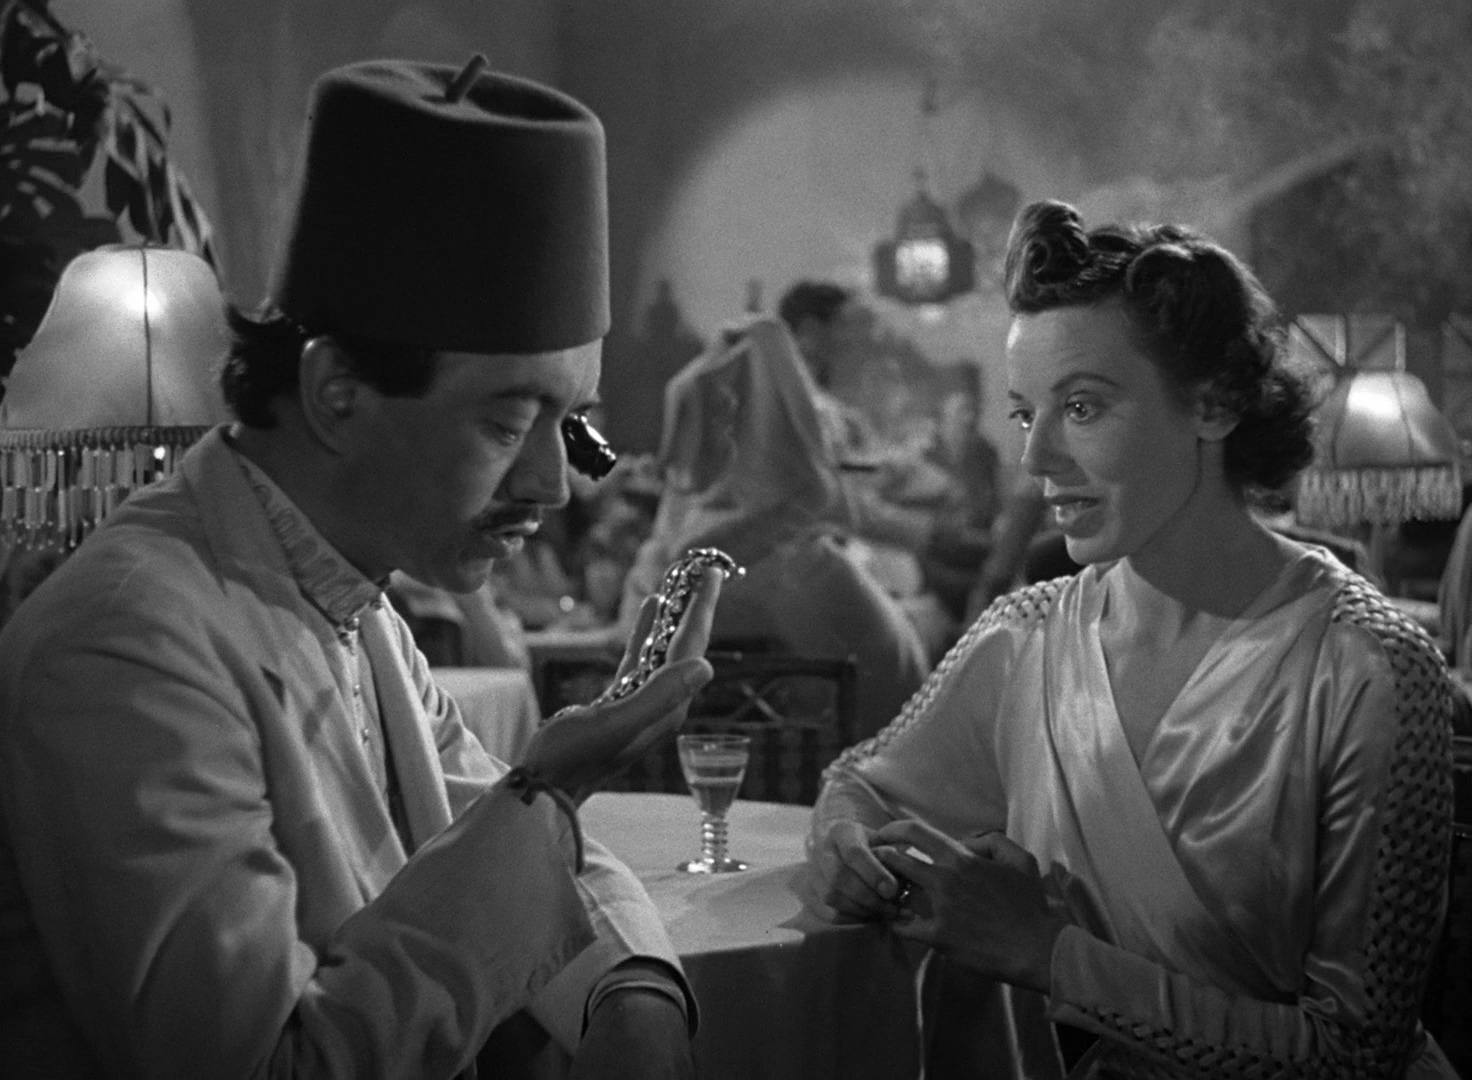 Lotte Palfi (right) in Casablanca